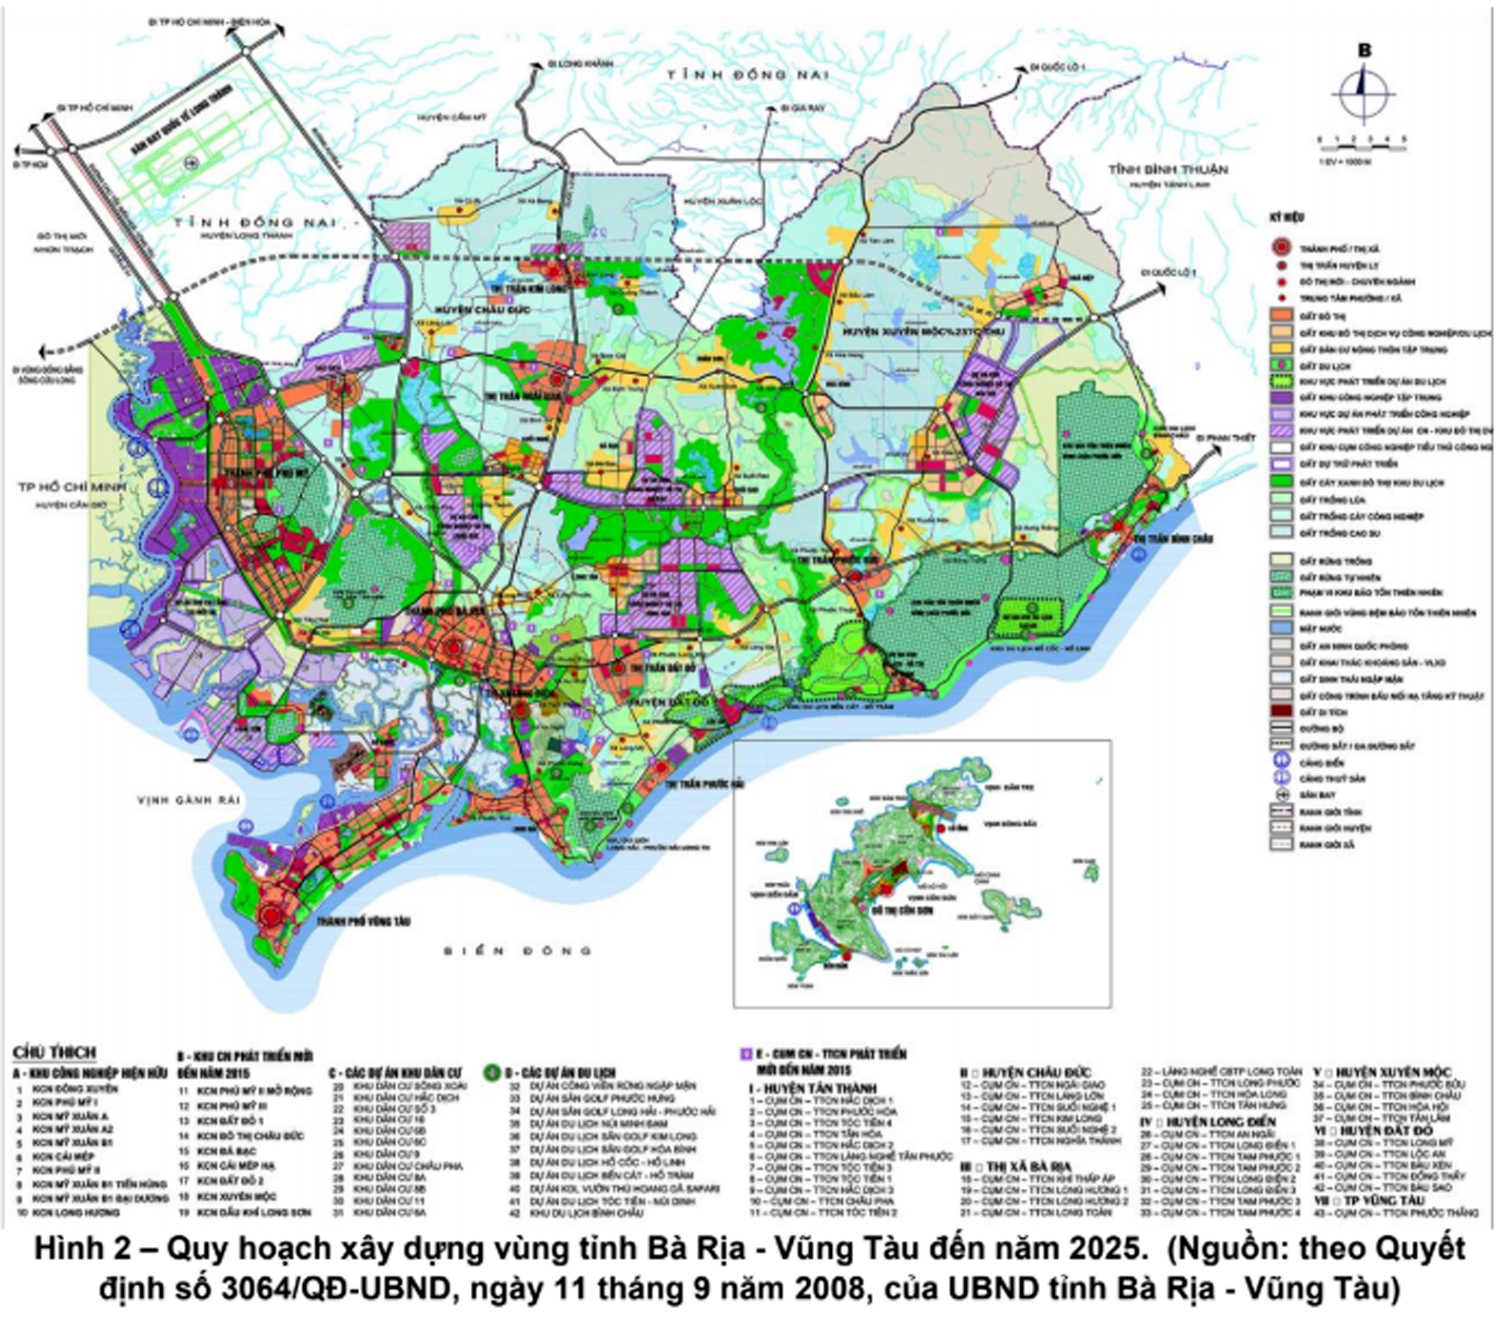 Quy hoạch xây dựng vùng tỉnh BR-VT đến năm 2025. (nguồn: theo Quyết định số 3064/QĐ-UBND ngày 11/9/2008 của UBND tỉnh).